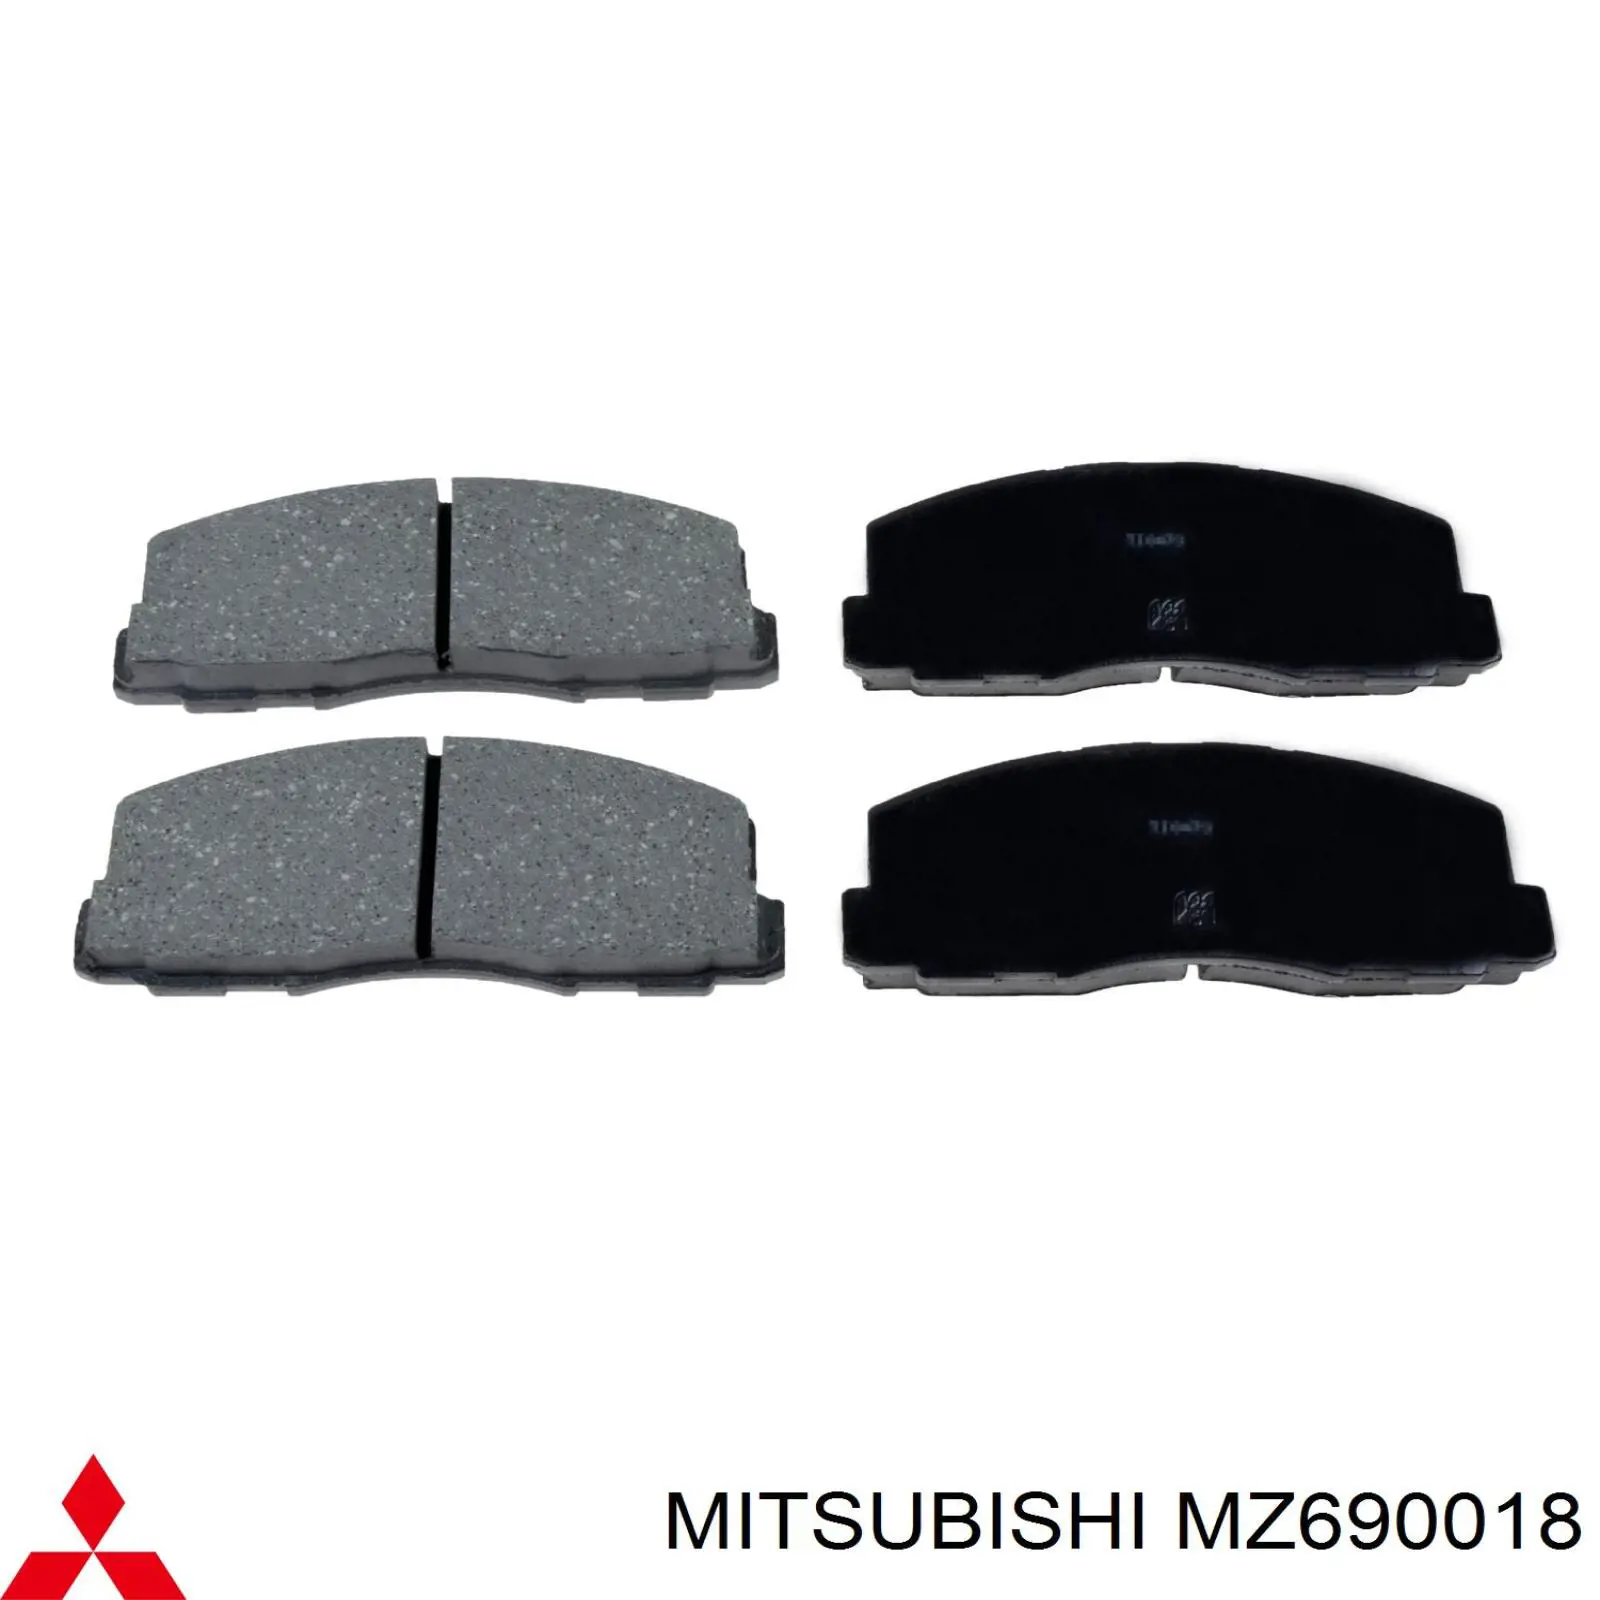 MZ690018 Mitsubishi колодки тормозные передние дисковые